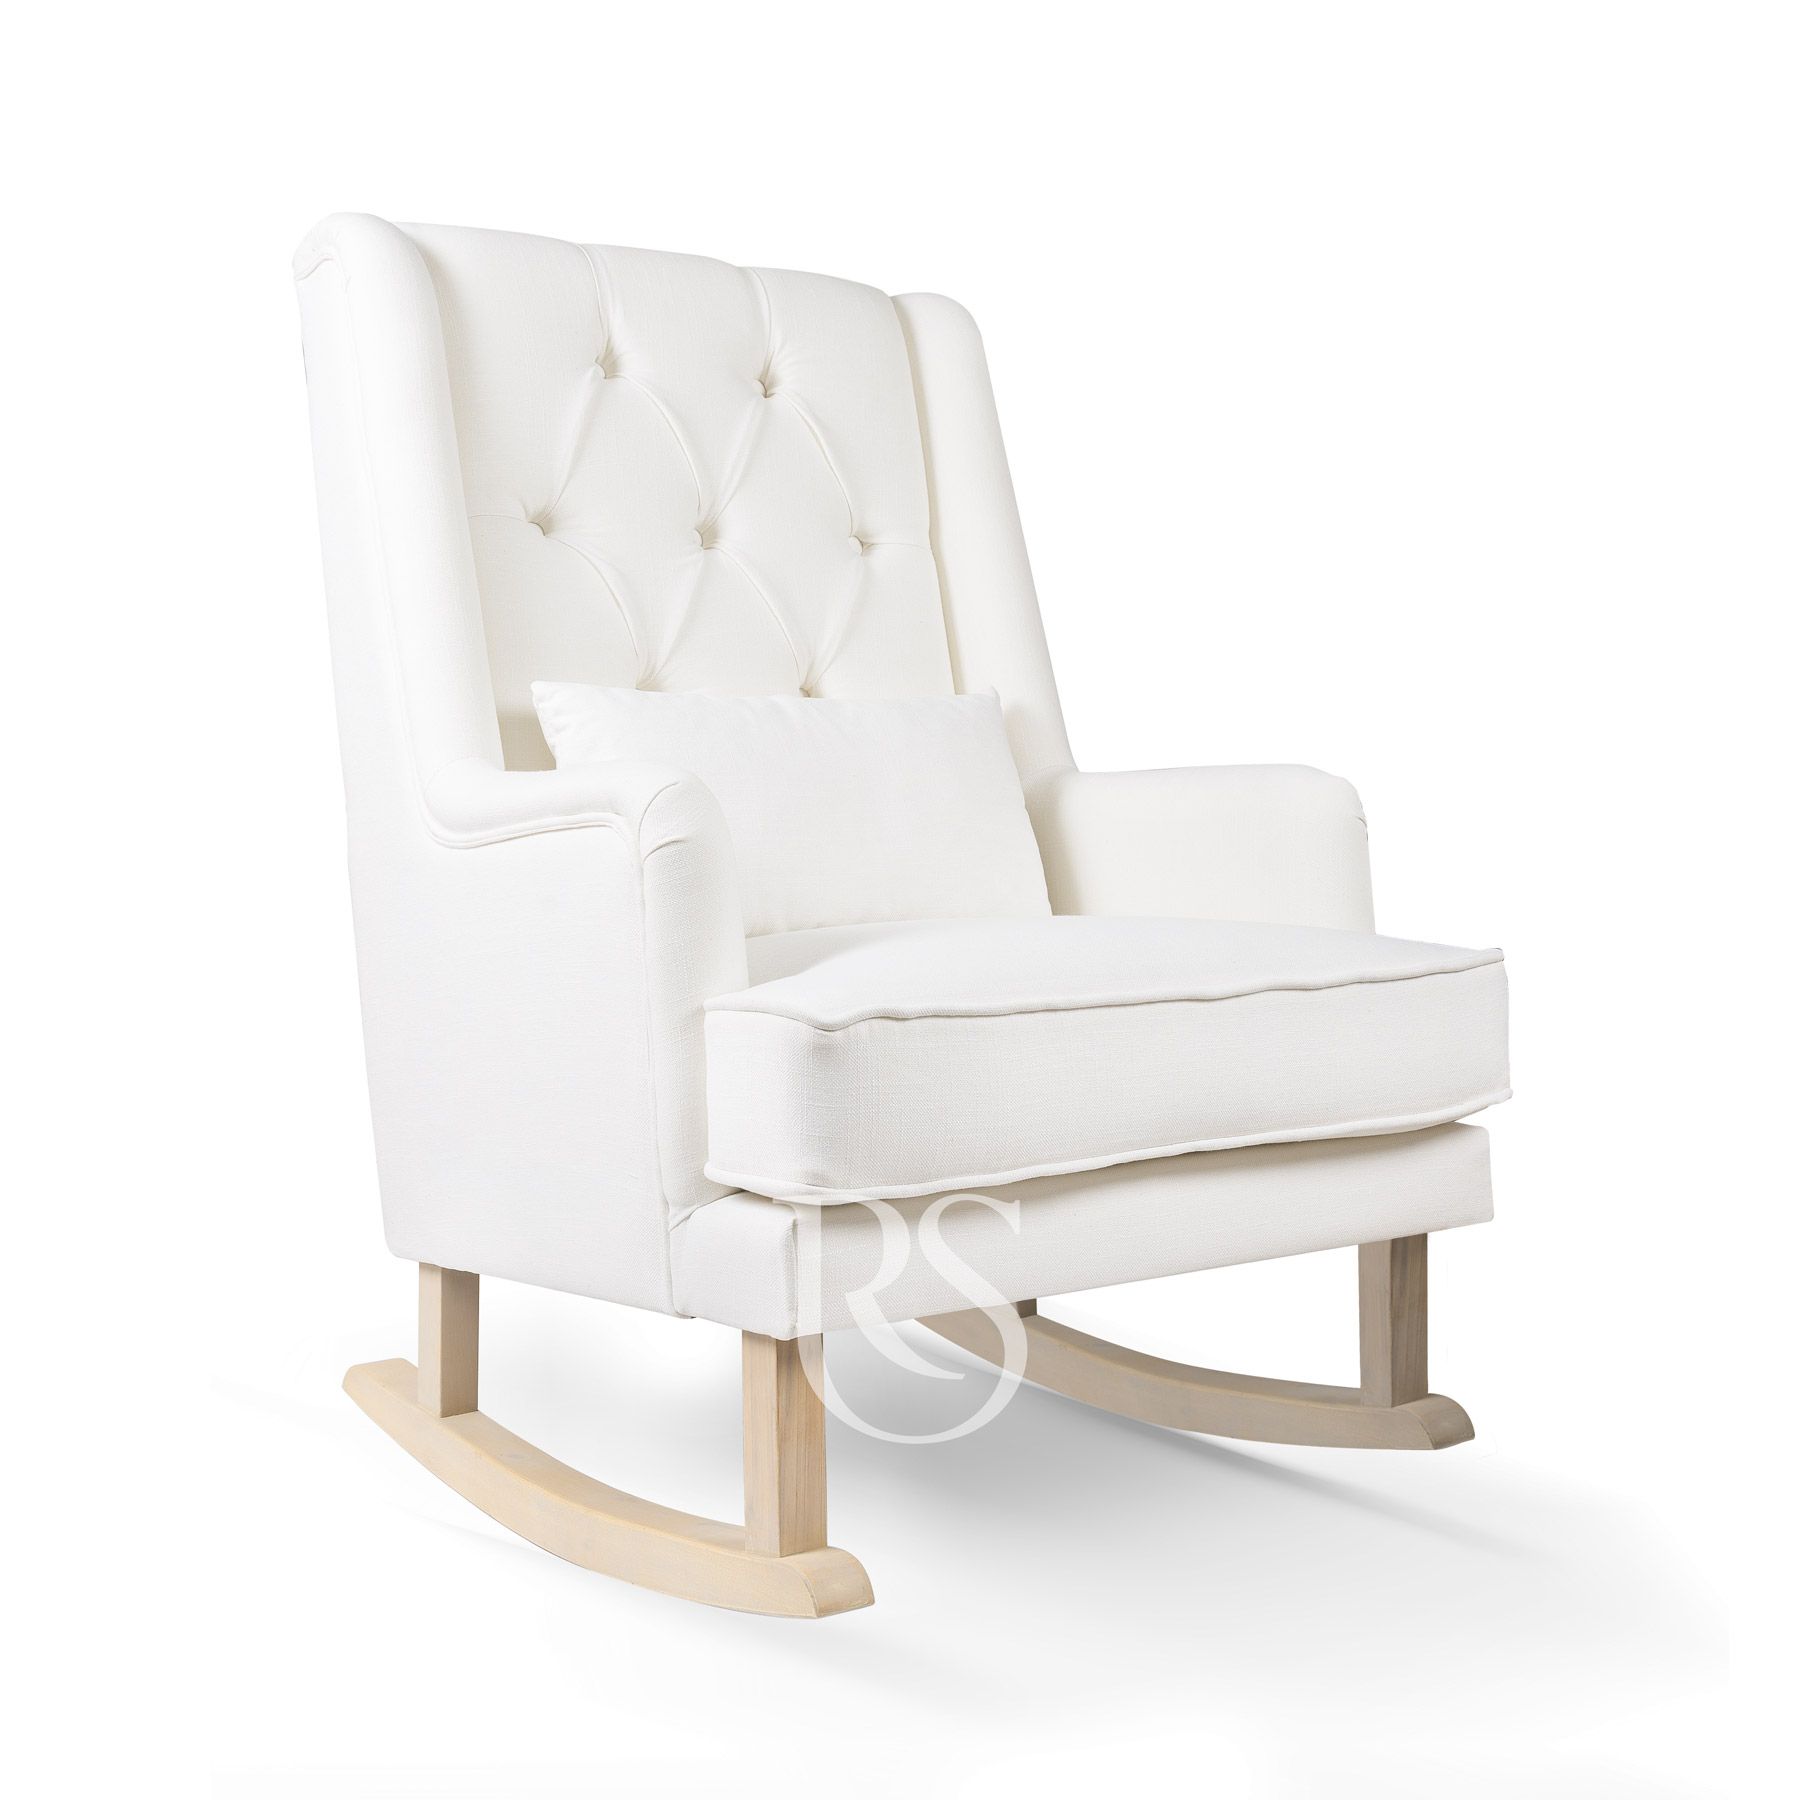 Schommelstoel wit met hout Royal Rocker Rocking Seats schommelstoel - bliss rocker grey wood perspective - schommelstoel - chaise a bascule - Schaukelstuhl